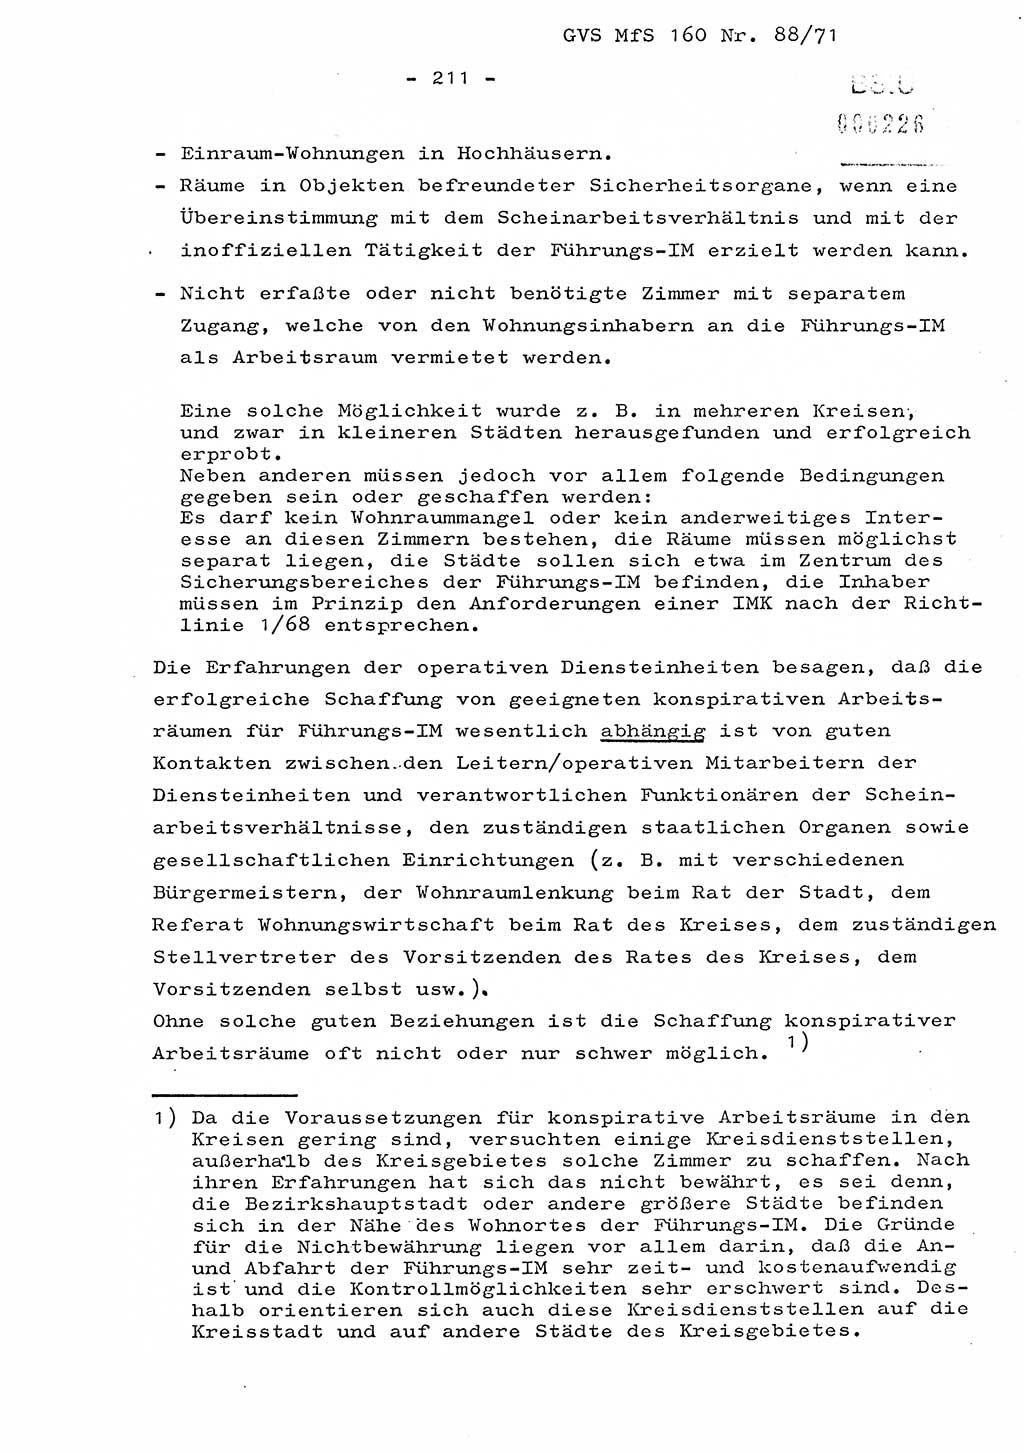 Dissertation Oberstleutnant Josef Schwarz (BV Schwerin), Major Fritz Amm (JHS), Hauptmann Peter Gräßler (JHS), Ministerium für Staatssicherheit (MfS) [Deutsche Demokratische Republik (DDR)], Juristische Hochschule (JHS), Geheime Verschlußsache (GVS) 160-88/71, Potsdam 1972, Seite 211 (Diss. MfS DDR JHS GVS 160-88/71 1972, S. 211)